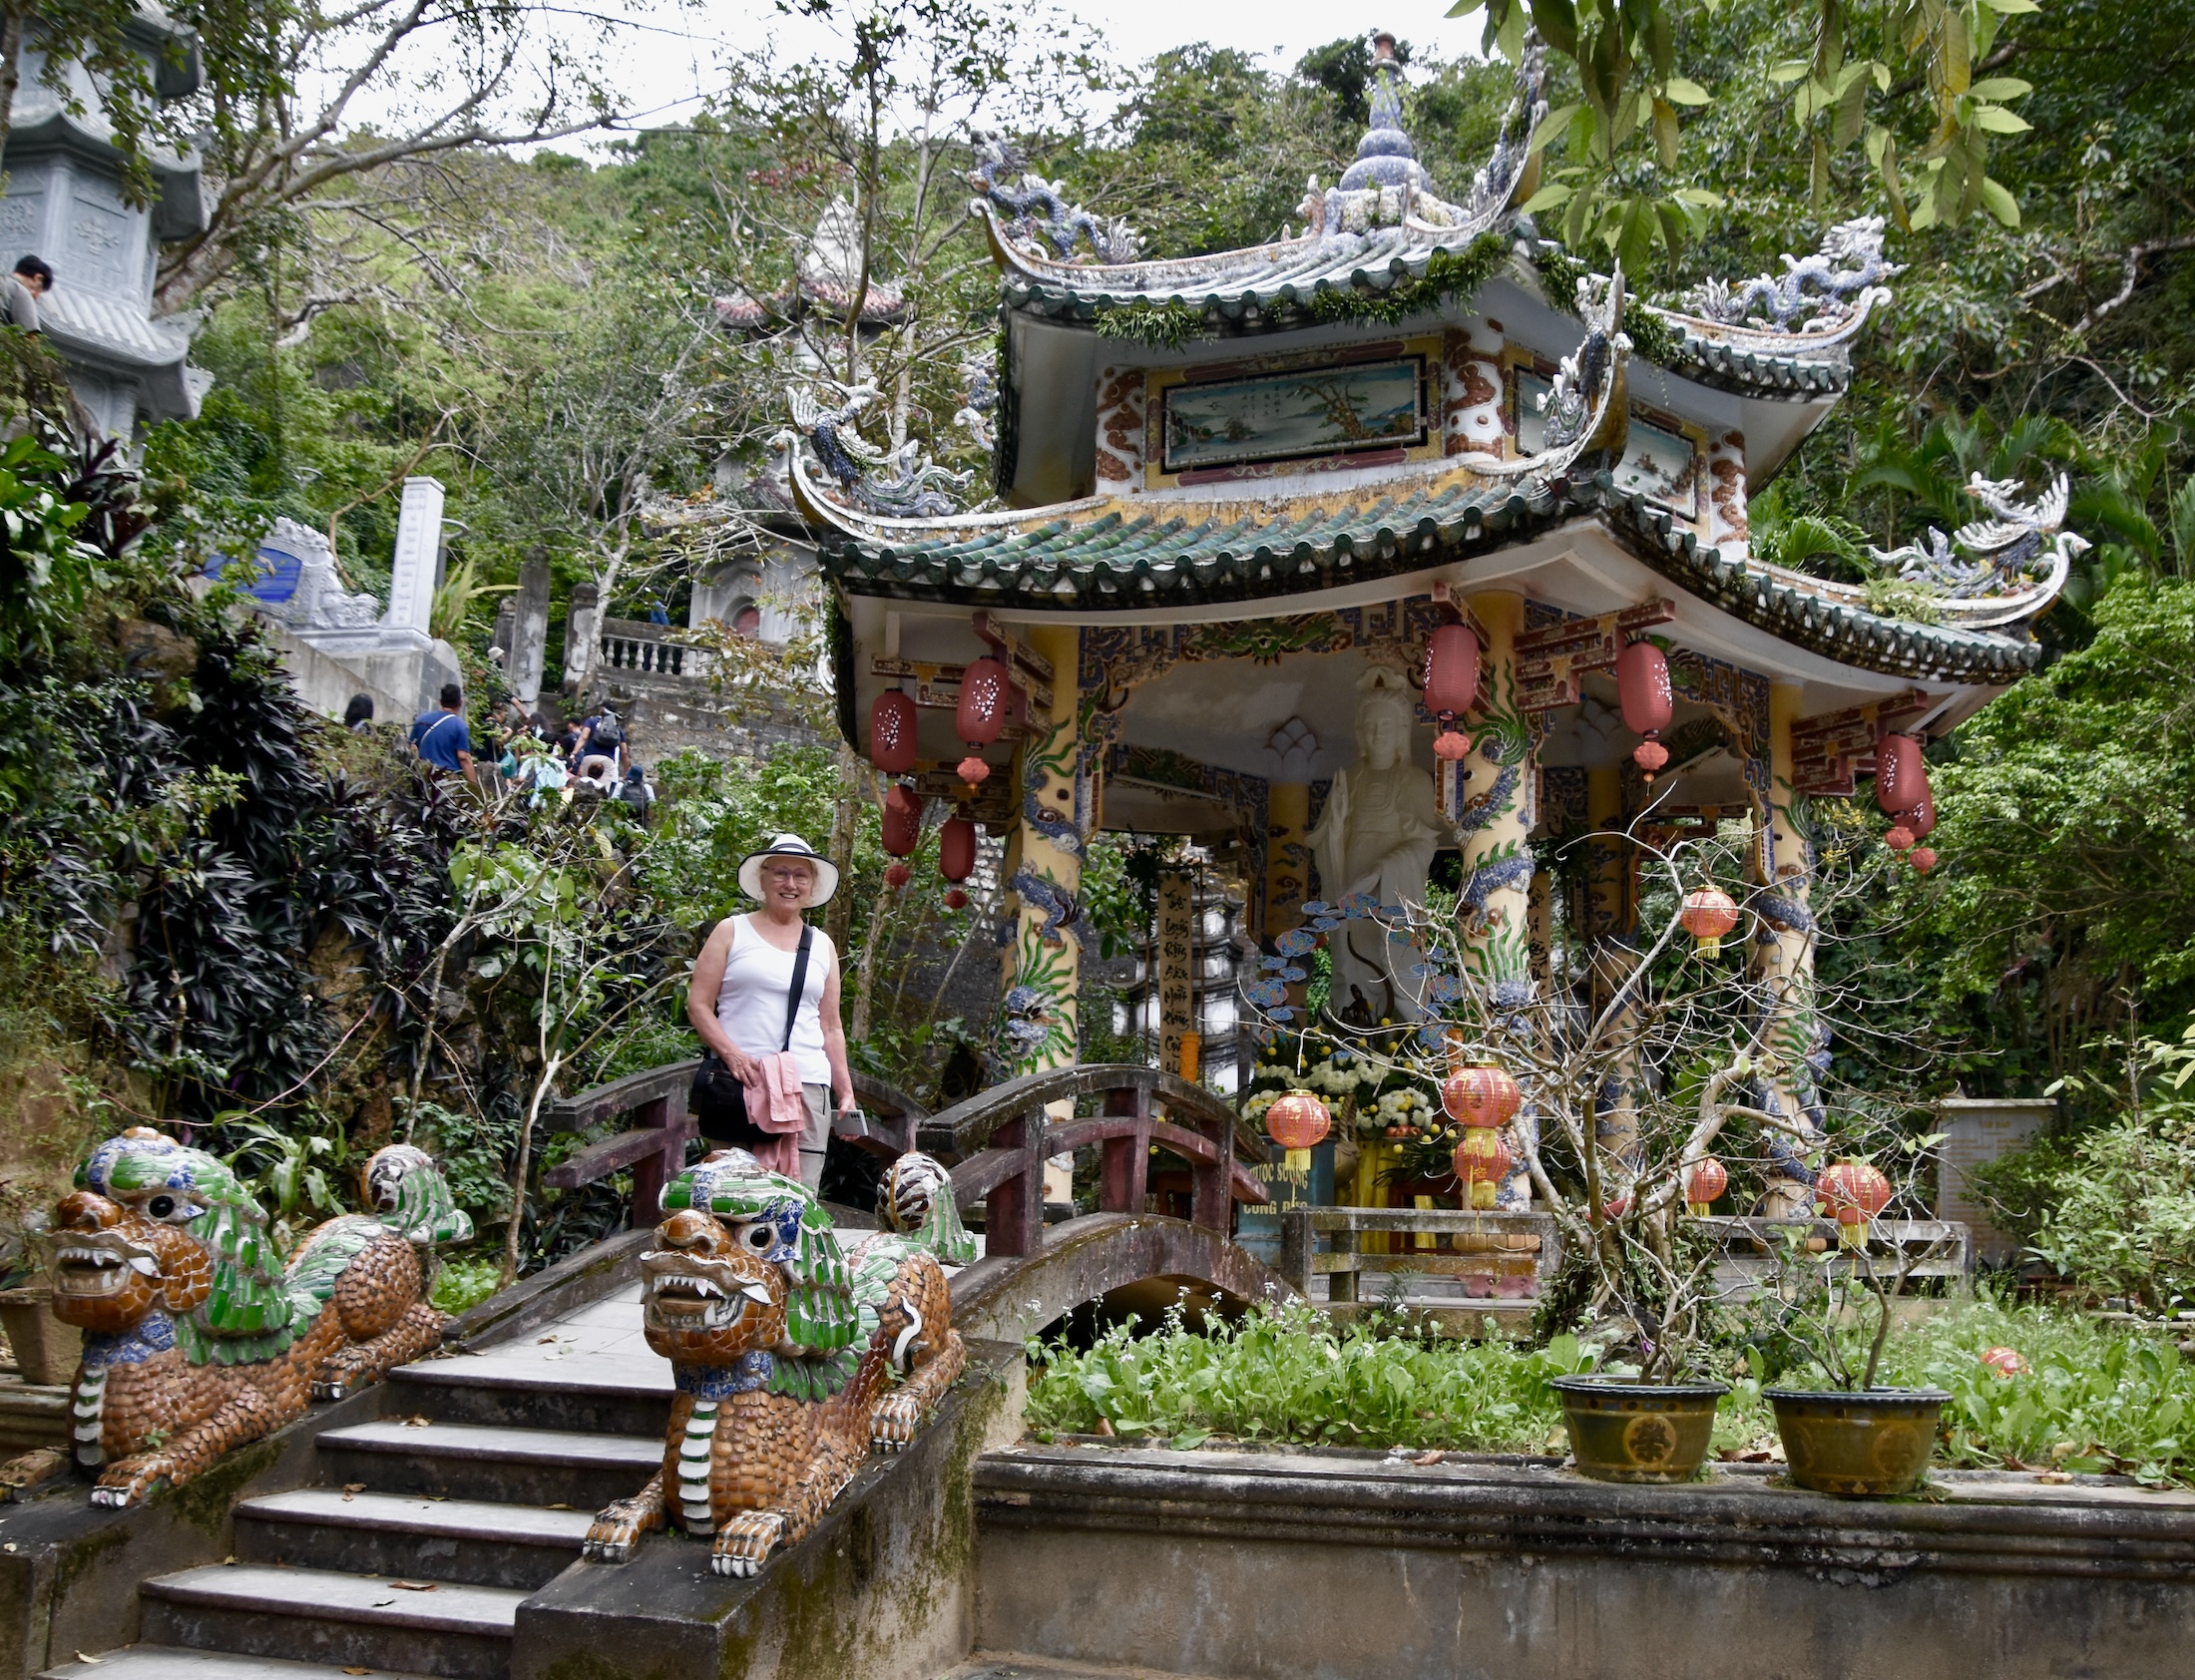 Alison at the Second Pagoda, Da Nang